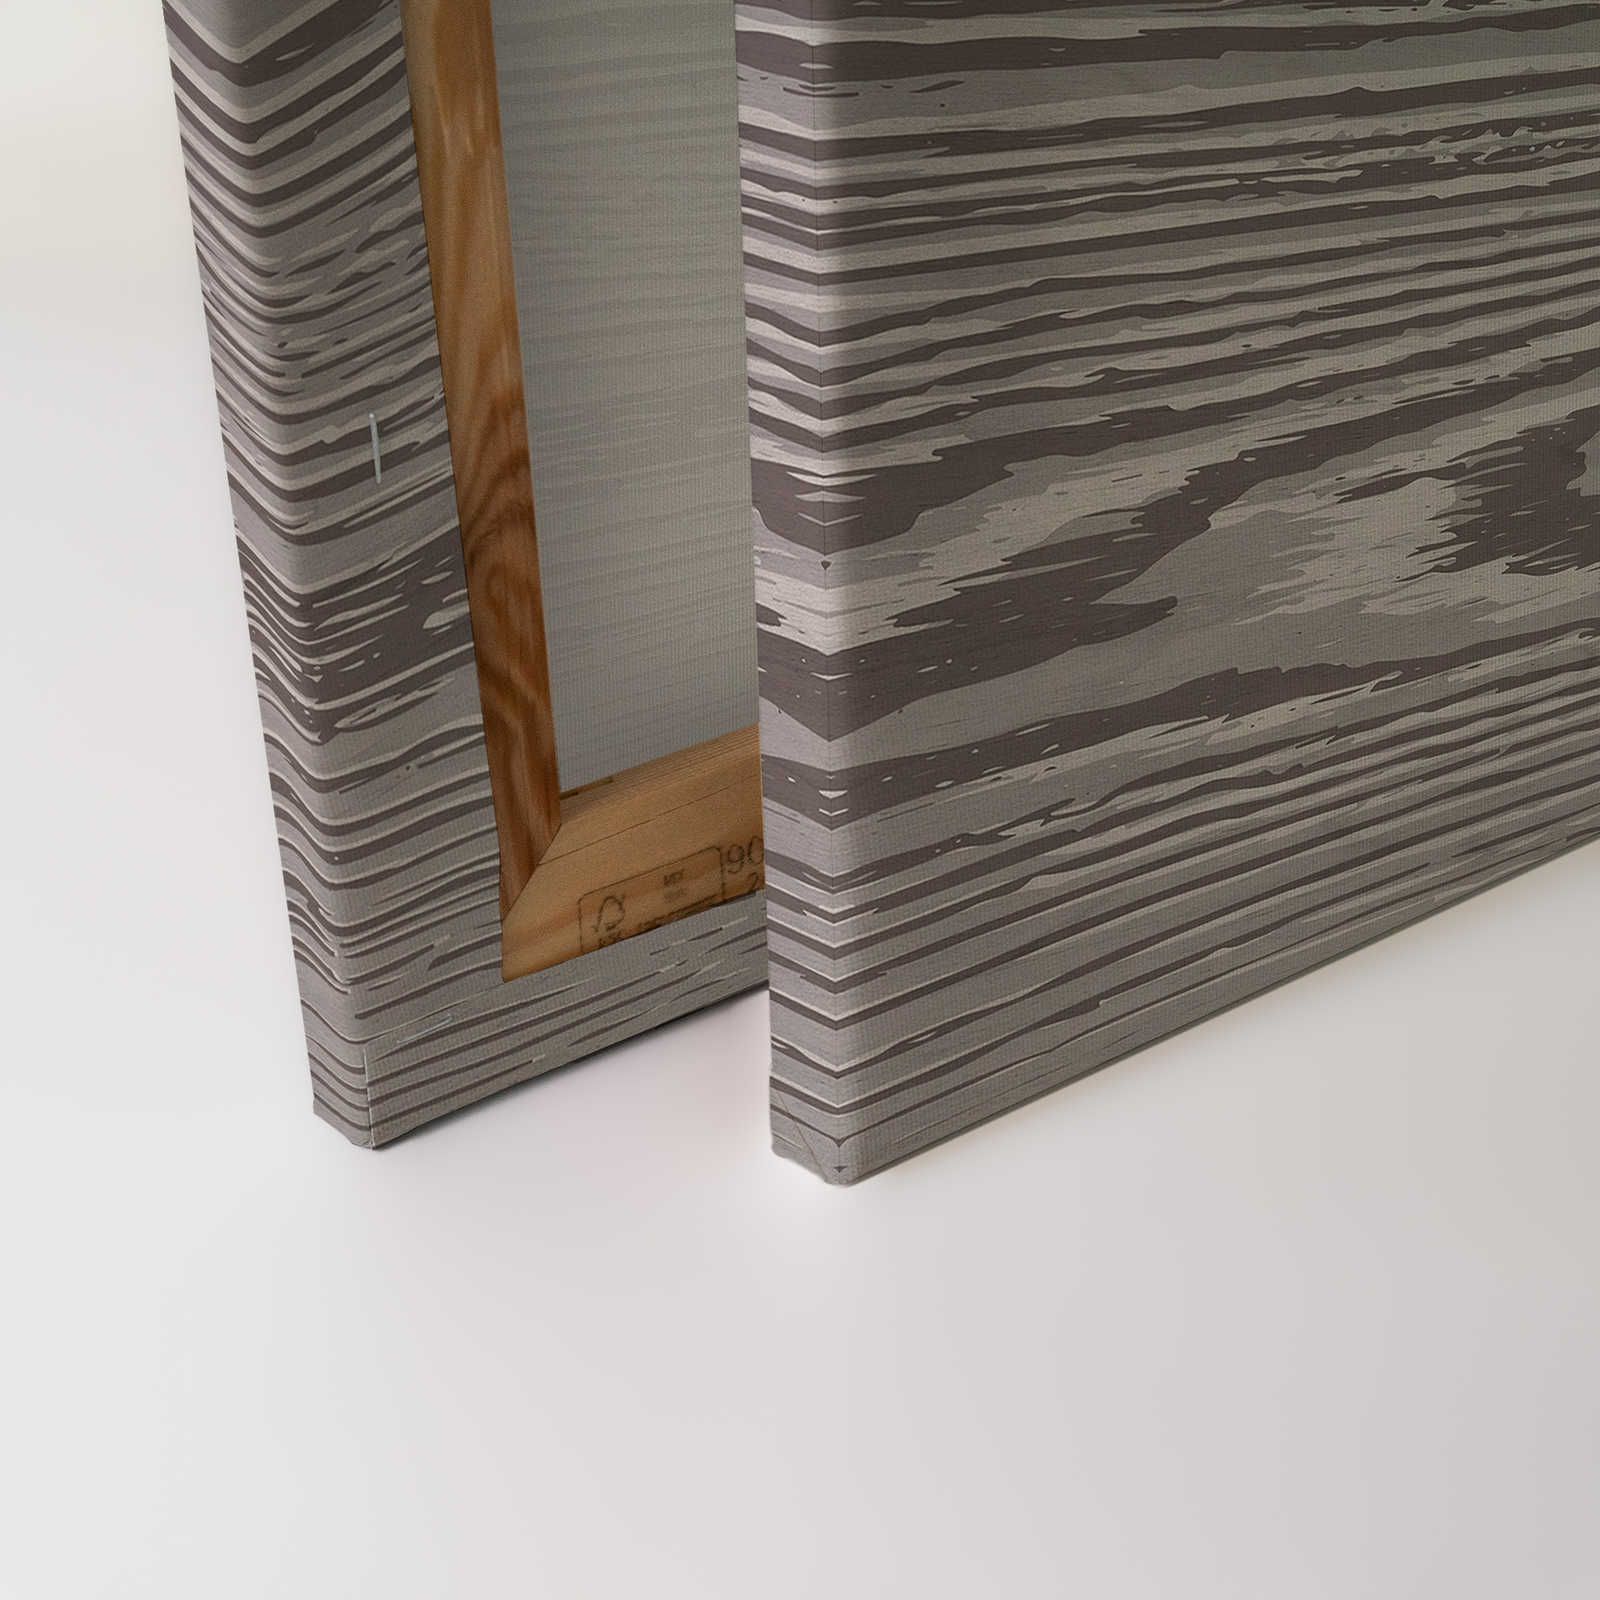             Bounty 4 - Pittura su tela effetto legno Grain XXL in marrone e grigio - 0,90 m x 0,60 m
        